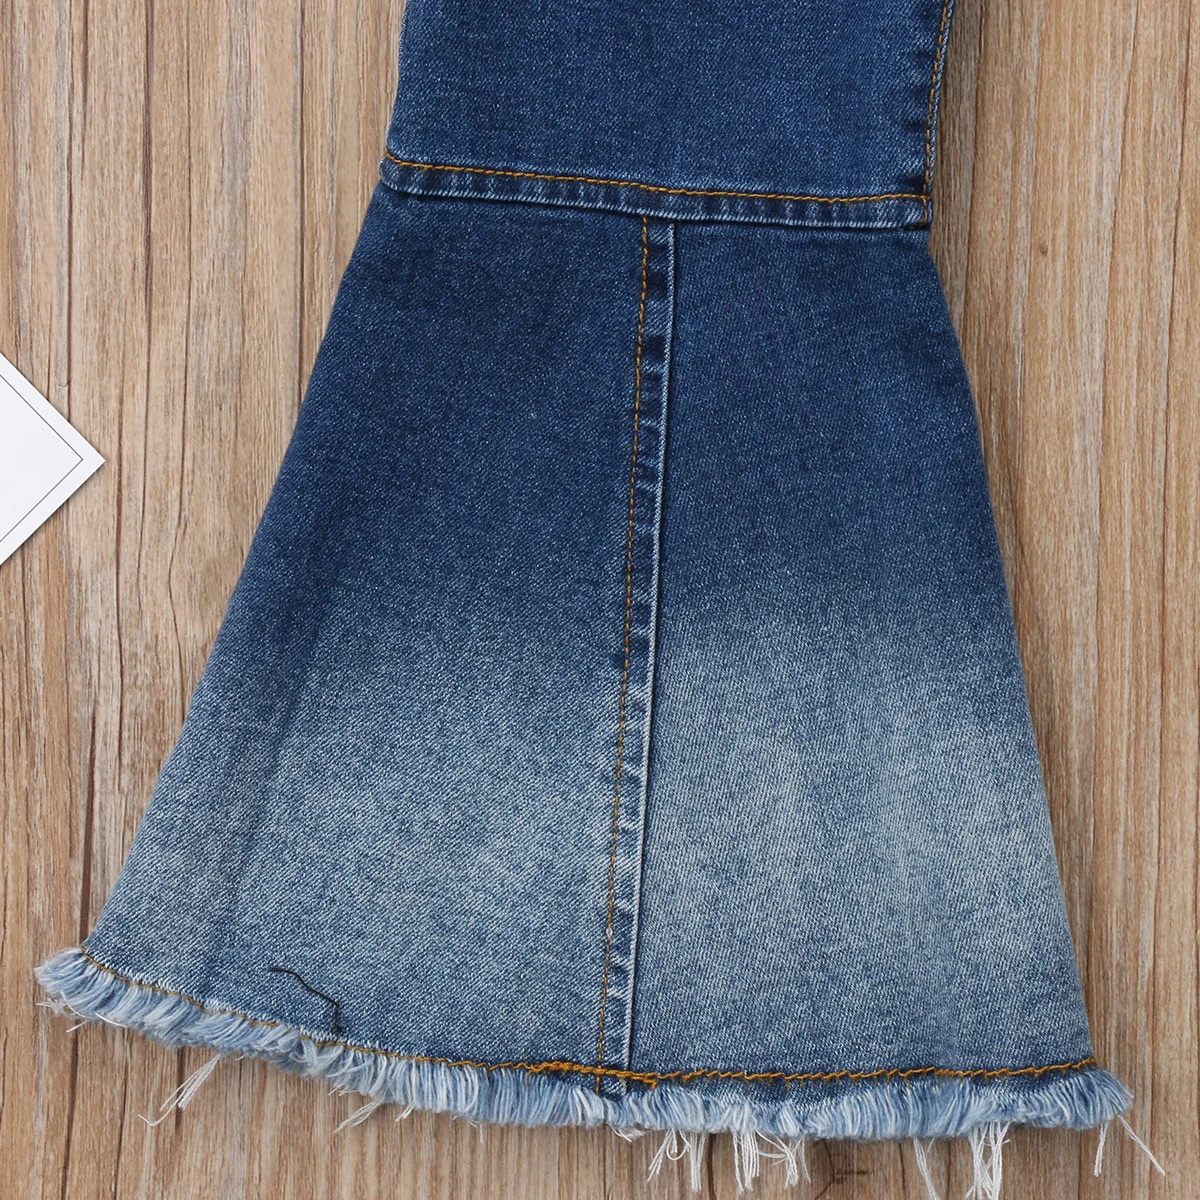 Pudcoco/модные джинсы для девочек джинсы с широкими штанинами для маленьких девочек детские осенние длинные брюки